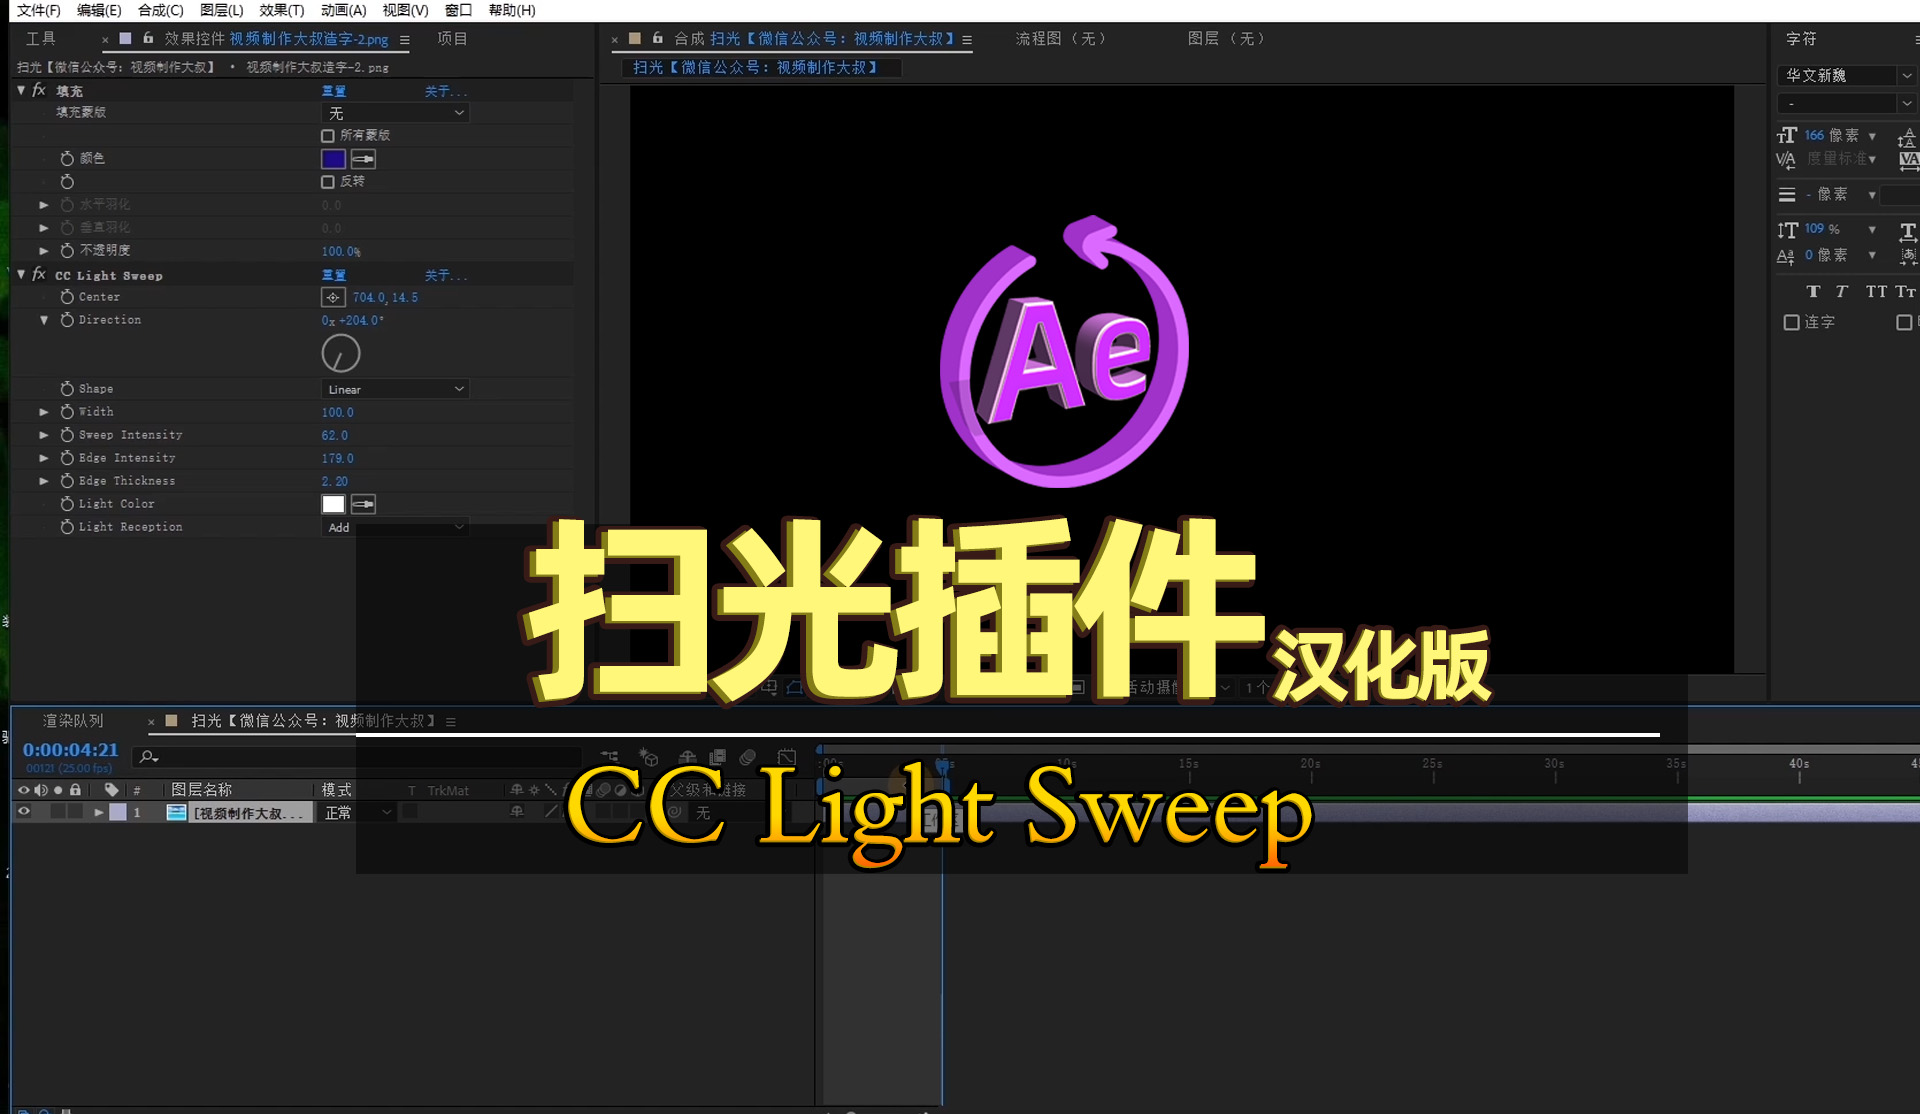 AE教程: 扫光插件CC Light Sweep汉化版安装解析